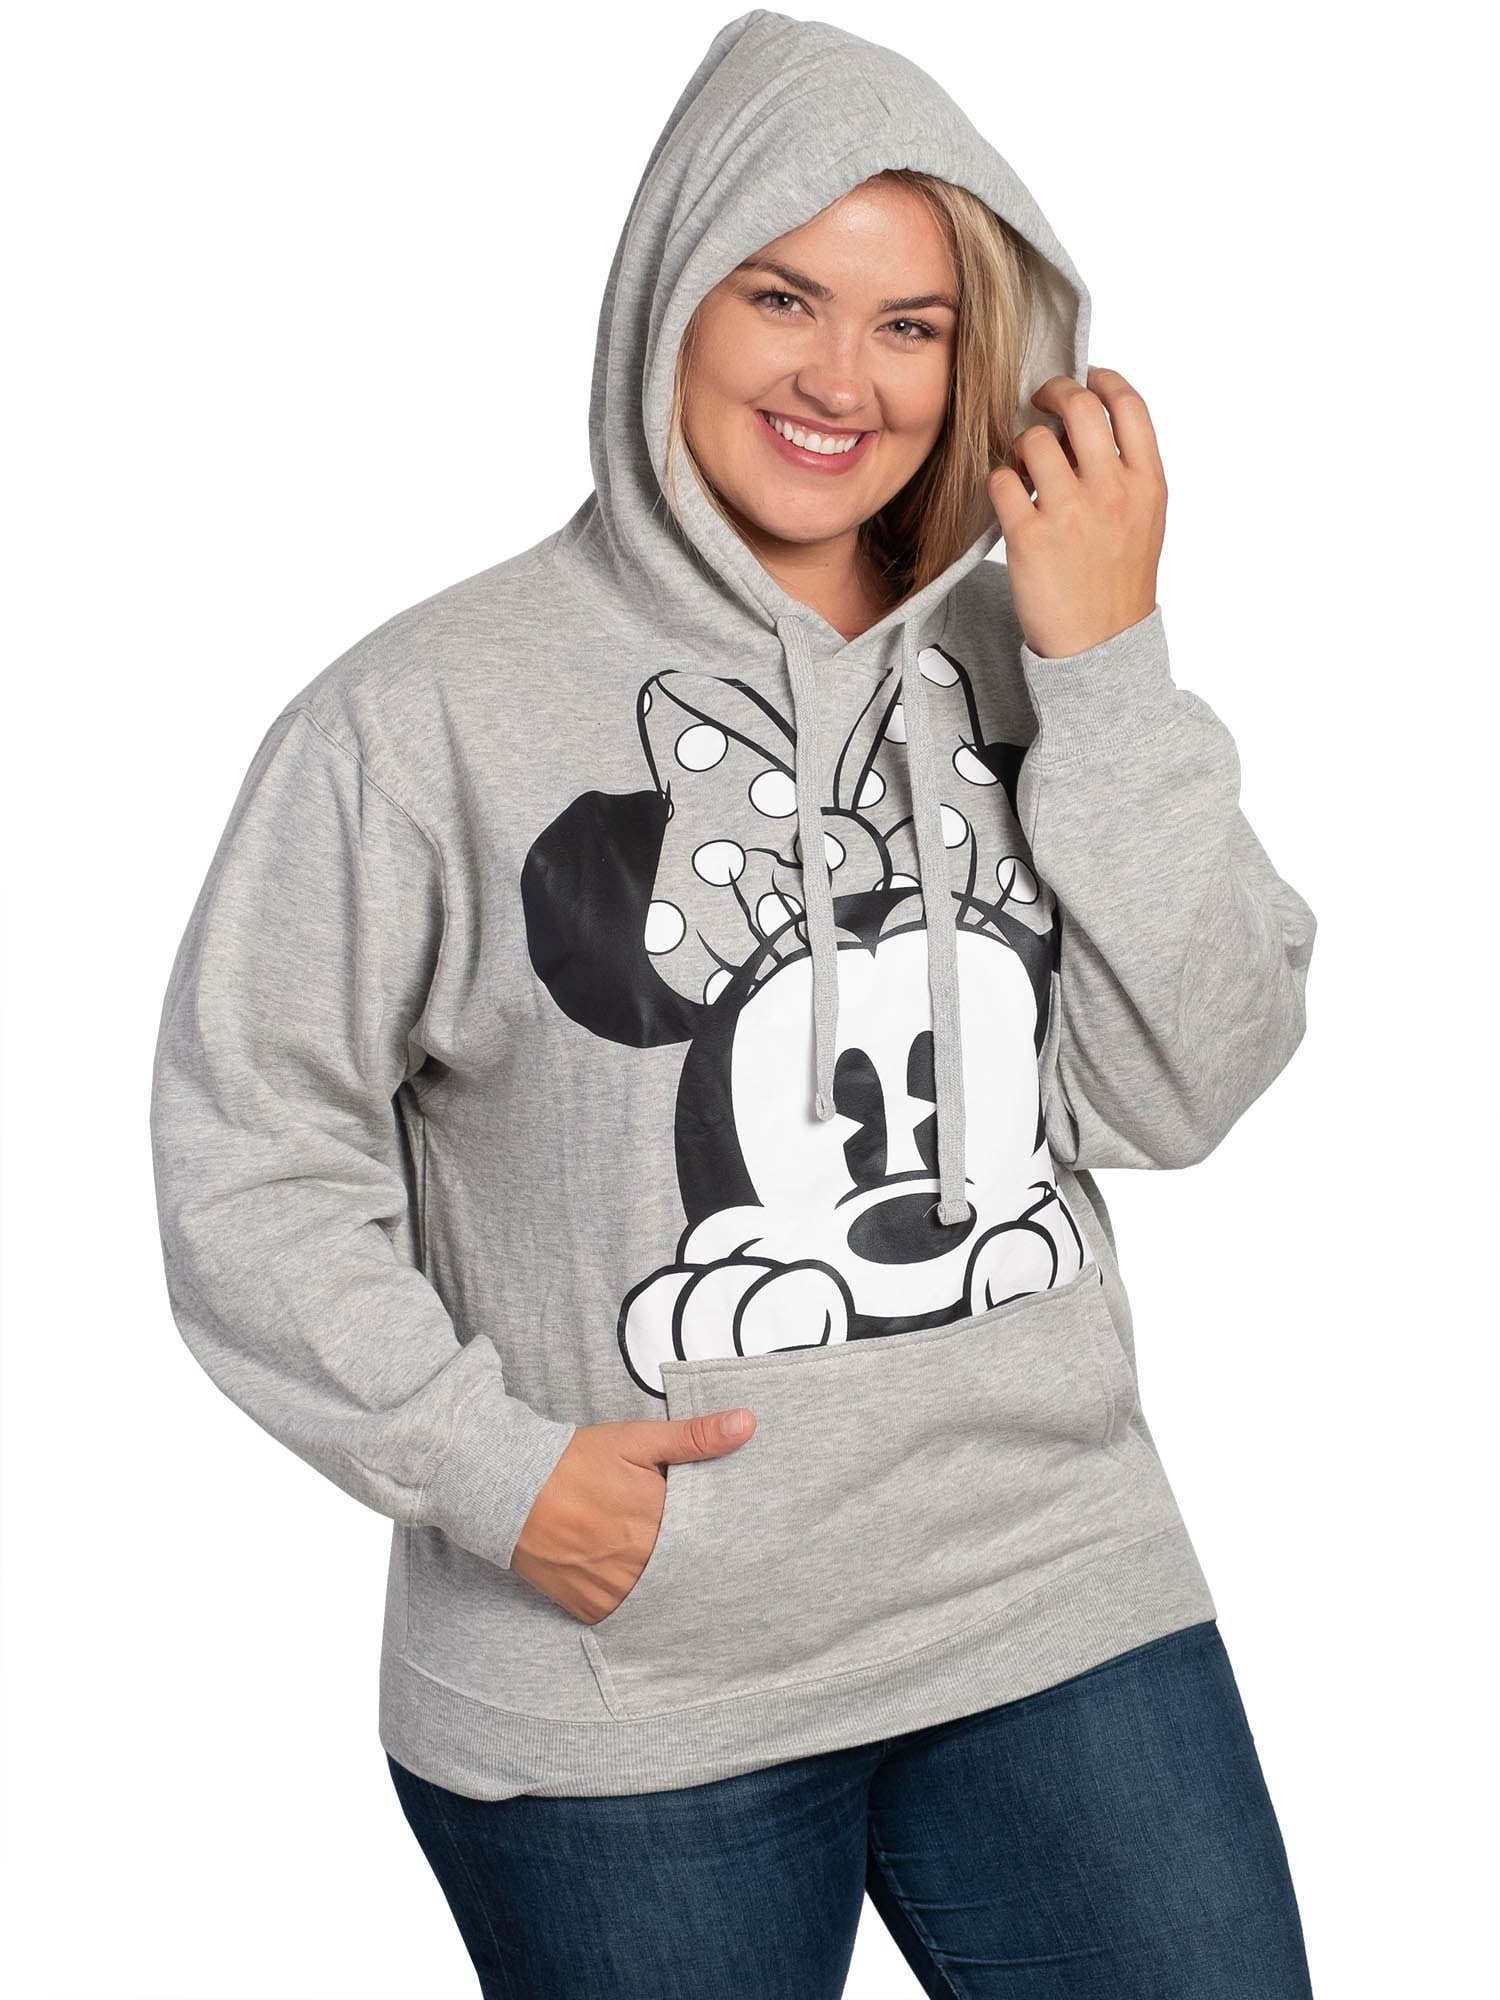 Minnie Mouse Cartoon Cute Hoodie Sweatshirt Jumper Pullover Men Women Ladies Unisex 3833